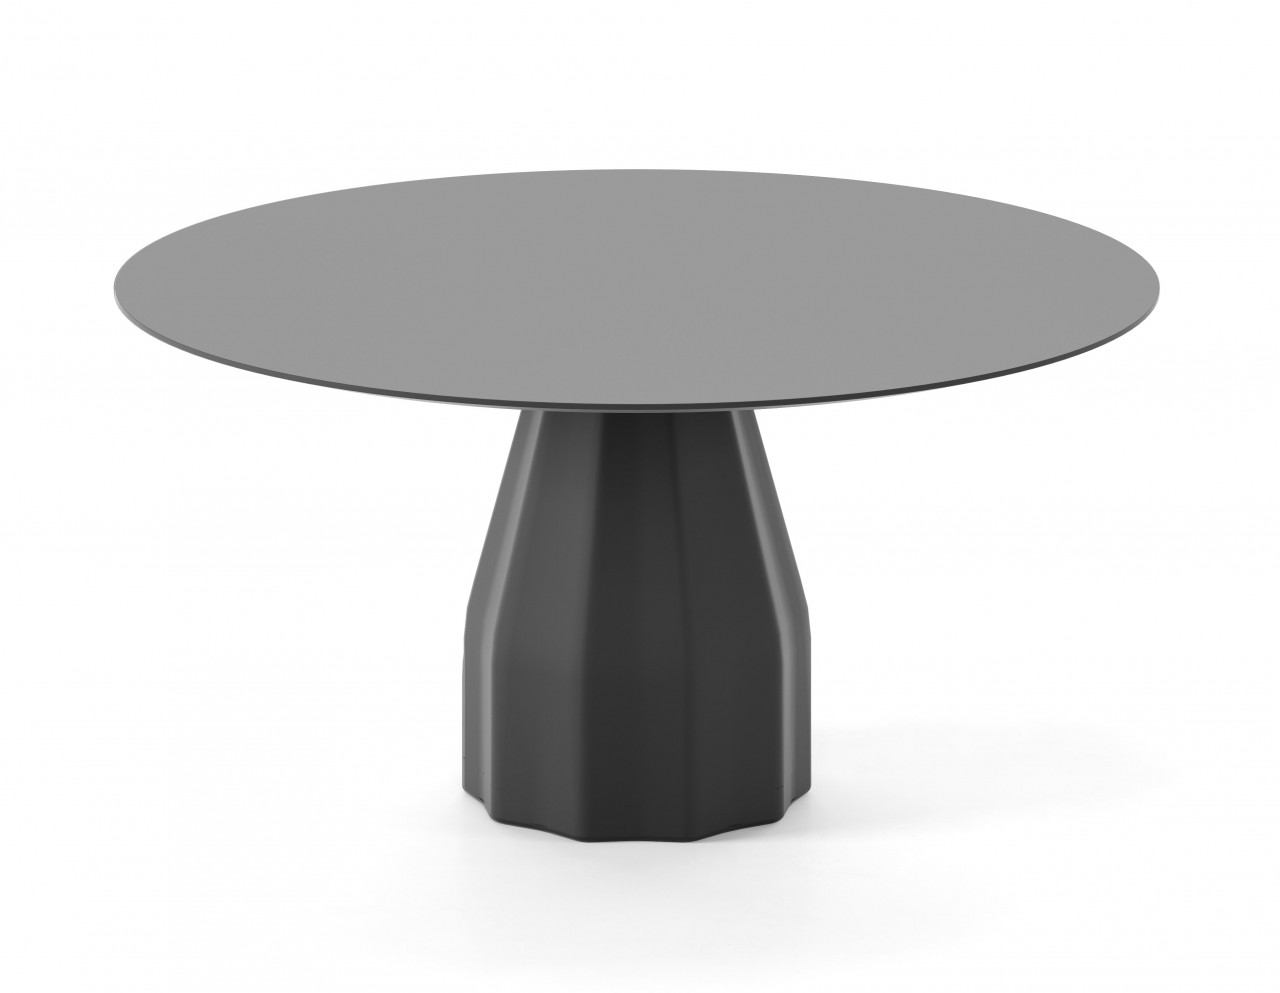 viccarbe Burin Tisch 120cm Durchmesser